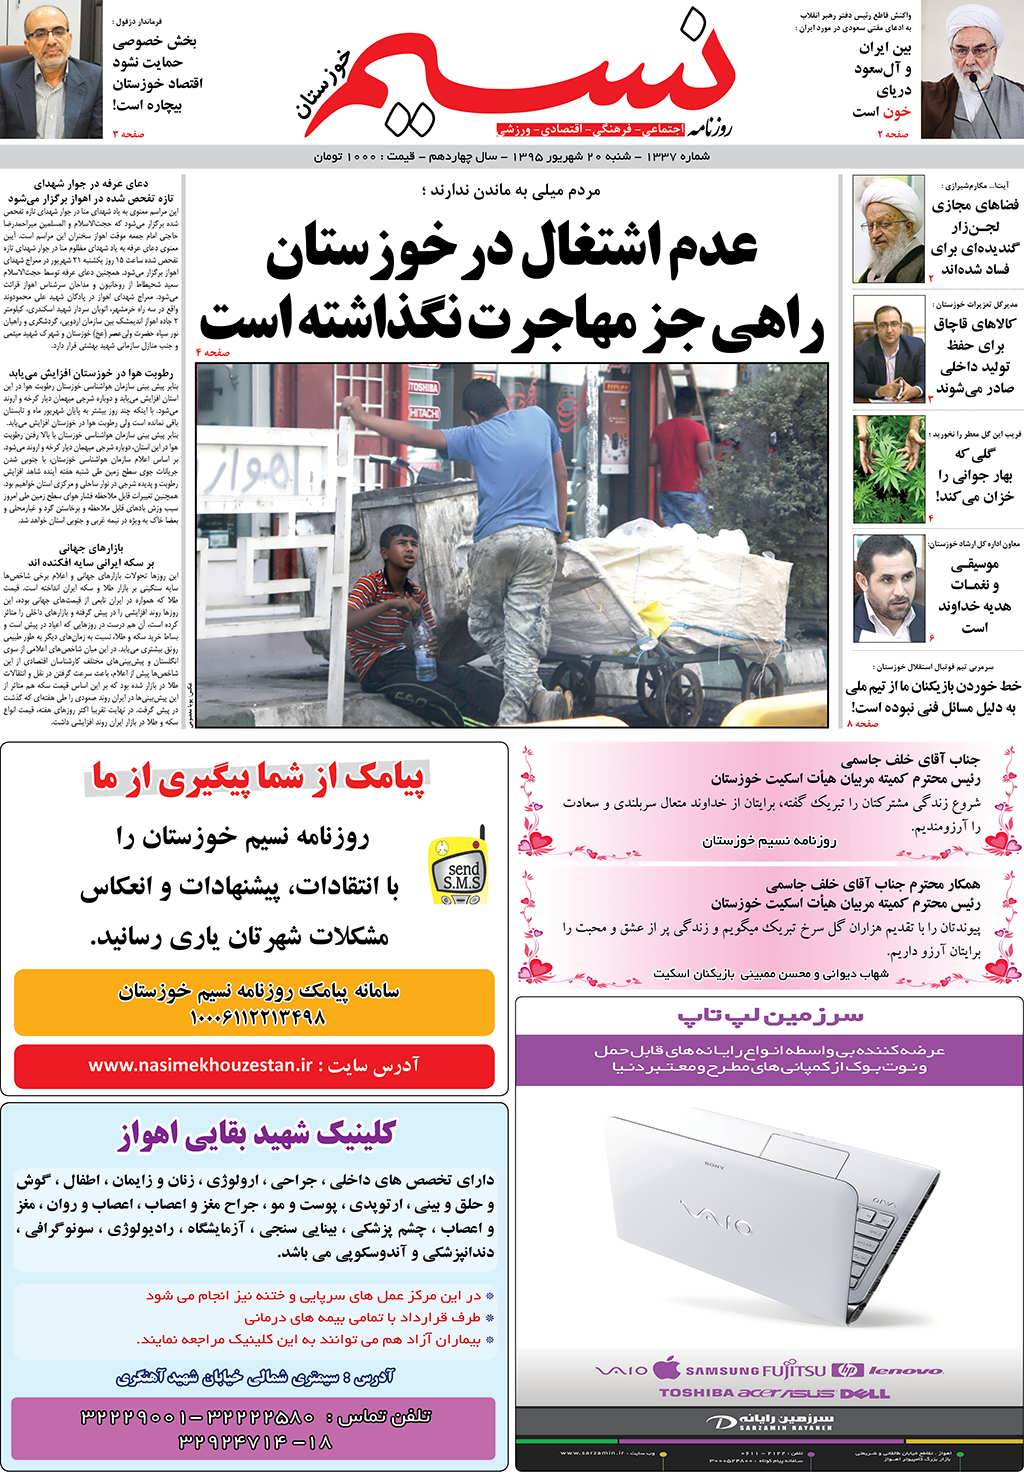 صفحه اصلی روزنامه نسیم شماره 1337